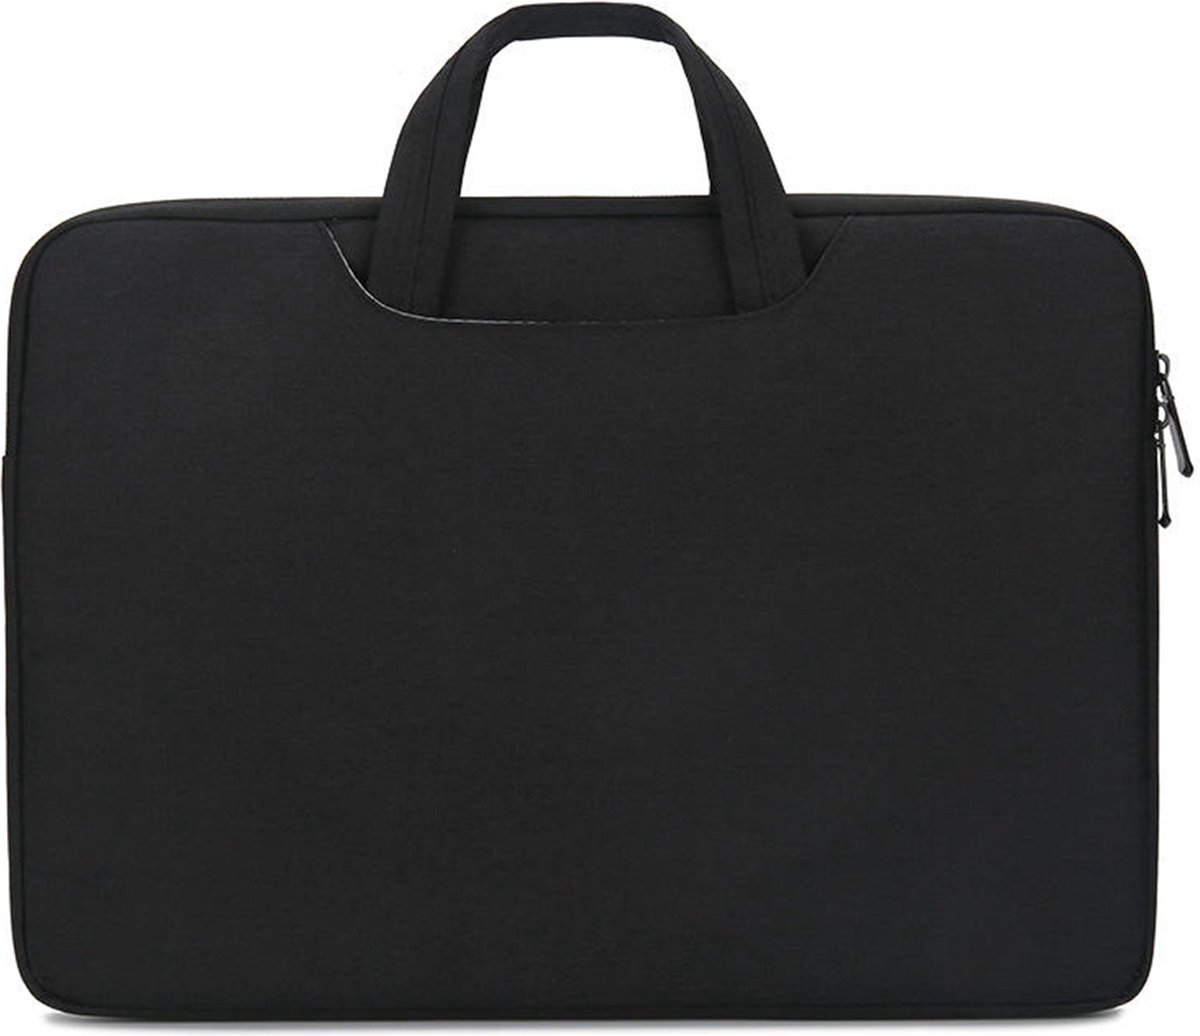 Case2go - Laptoptas geschikt voor DynaBook Portege - Laptophoes 13 inch - Zwart